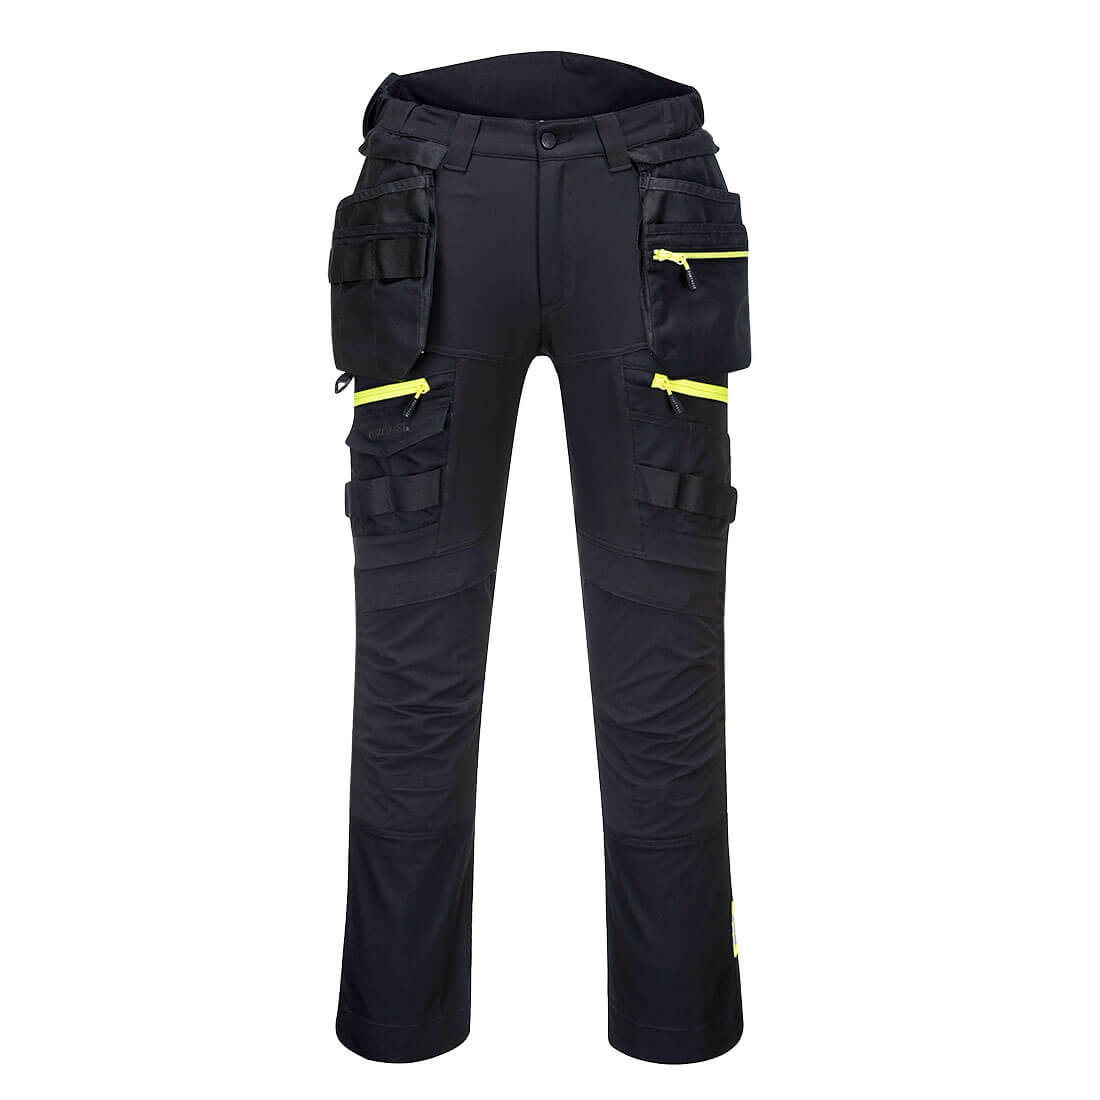 Pantaloni dama DX4 cu buzunare detașabile Holster - Imbracaminte de protectie